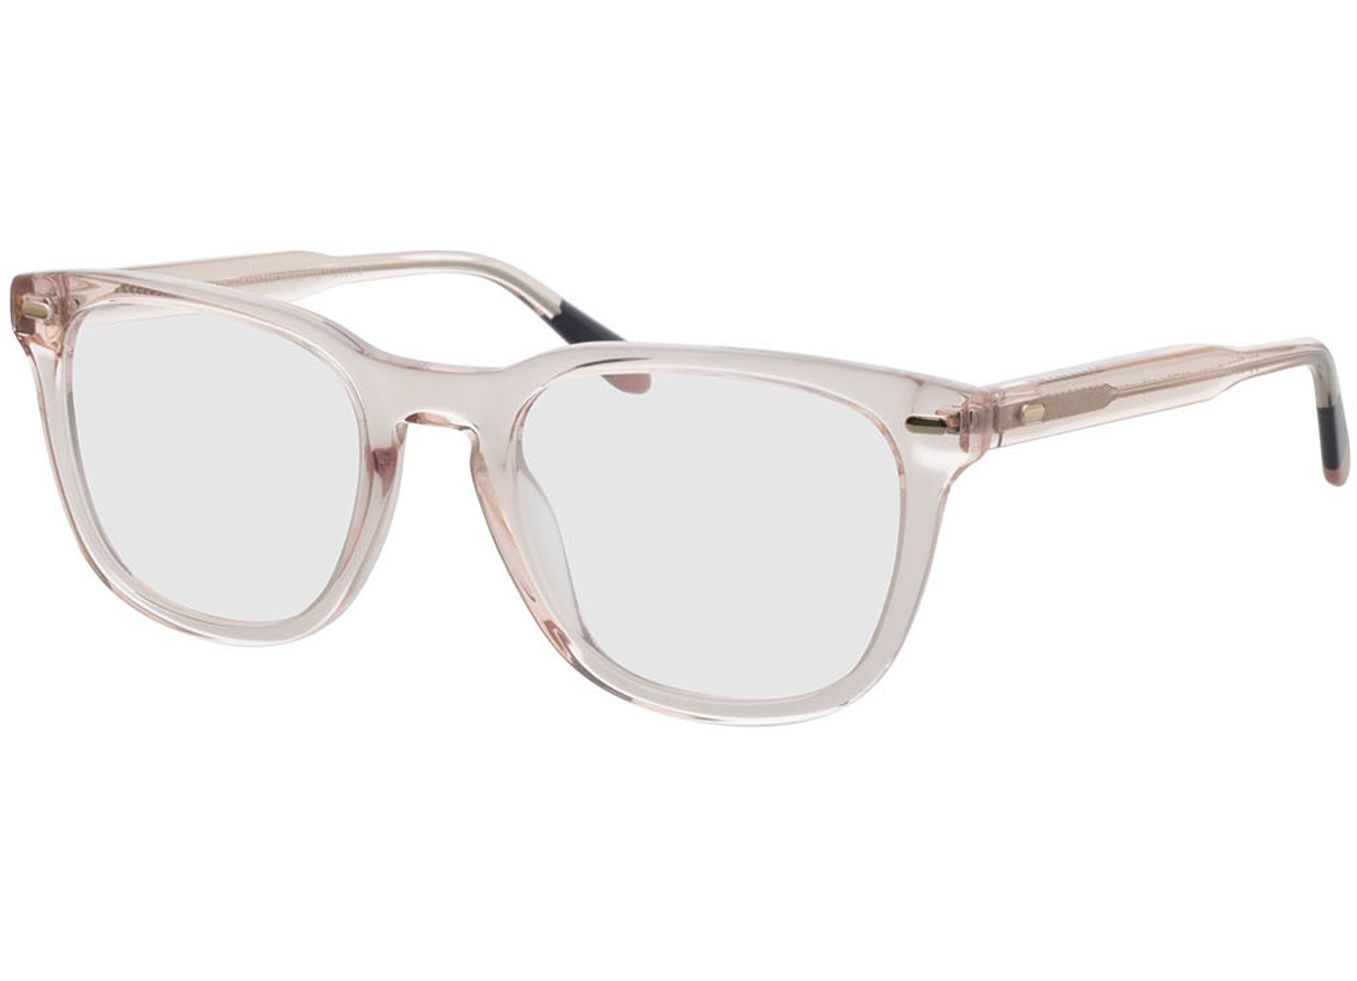 Bel Air - beige Gleitsichtbrille, Vollrand, Eckig von Brille24 Collection